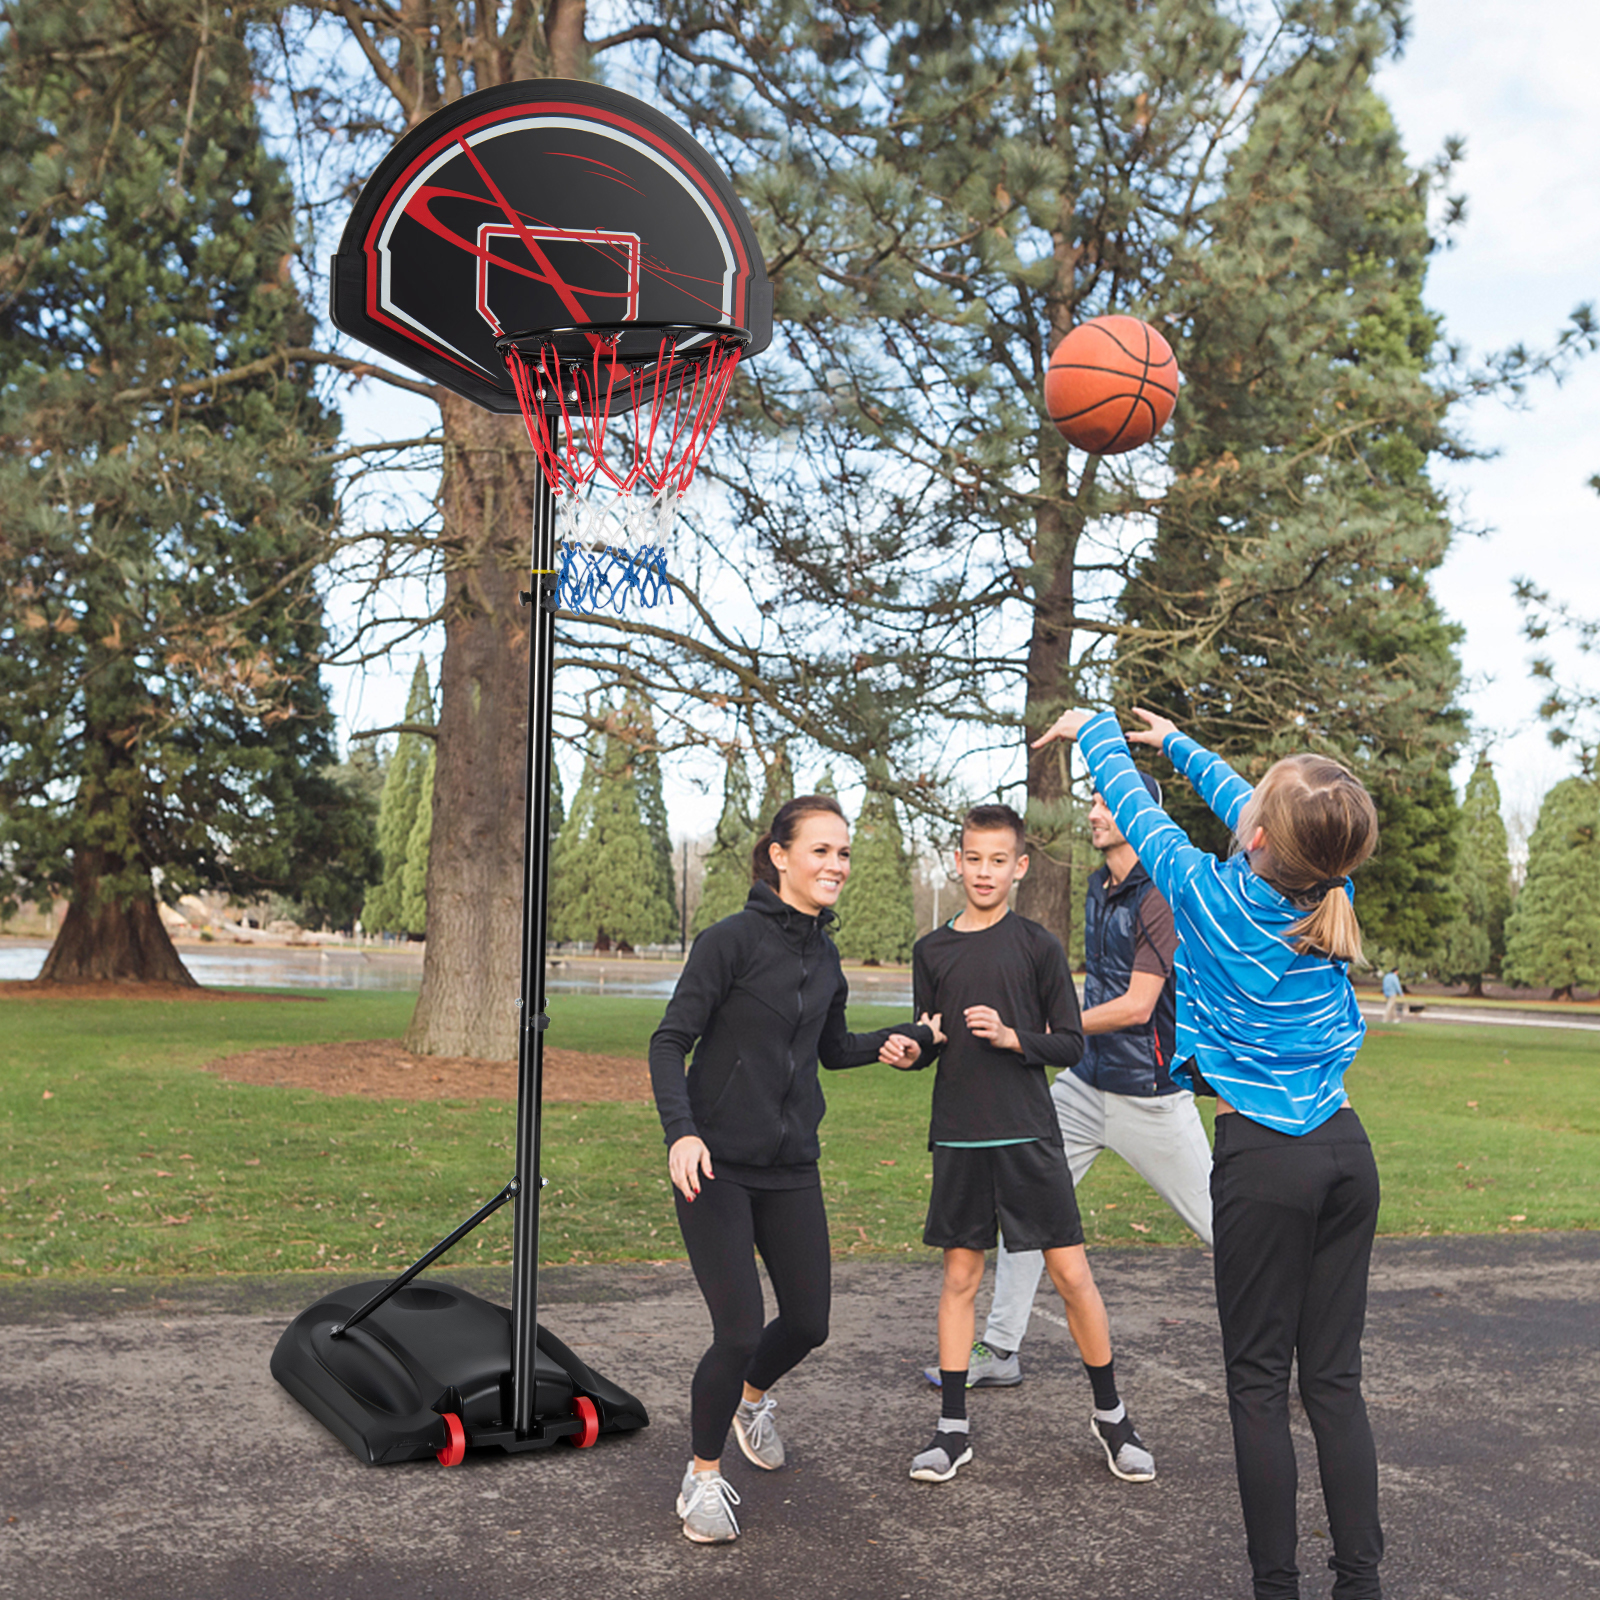 COSTWAY Basketballständer 170-230 cm höhenverstellbar Schwarz Gartenspielzeug